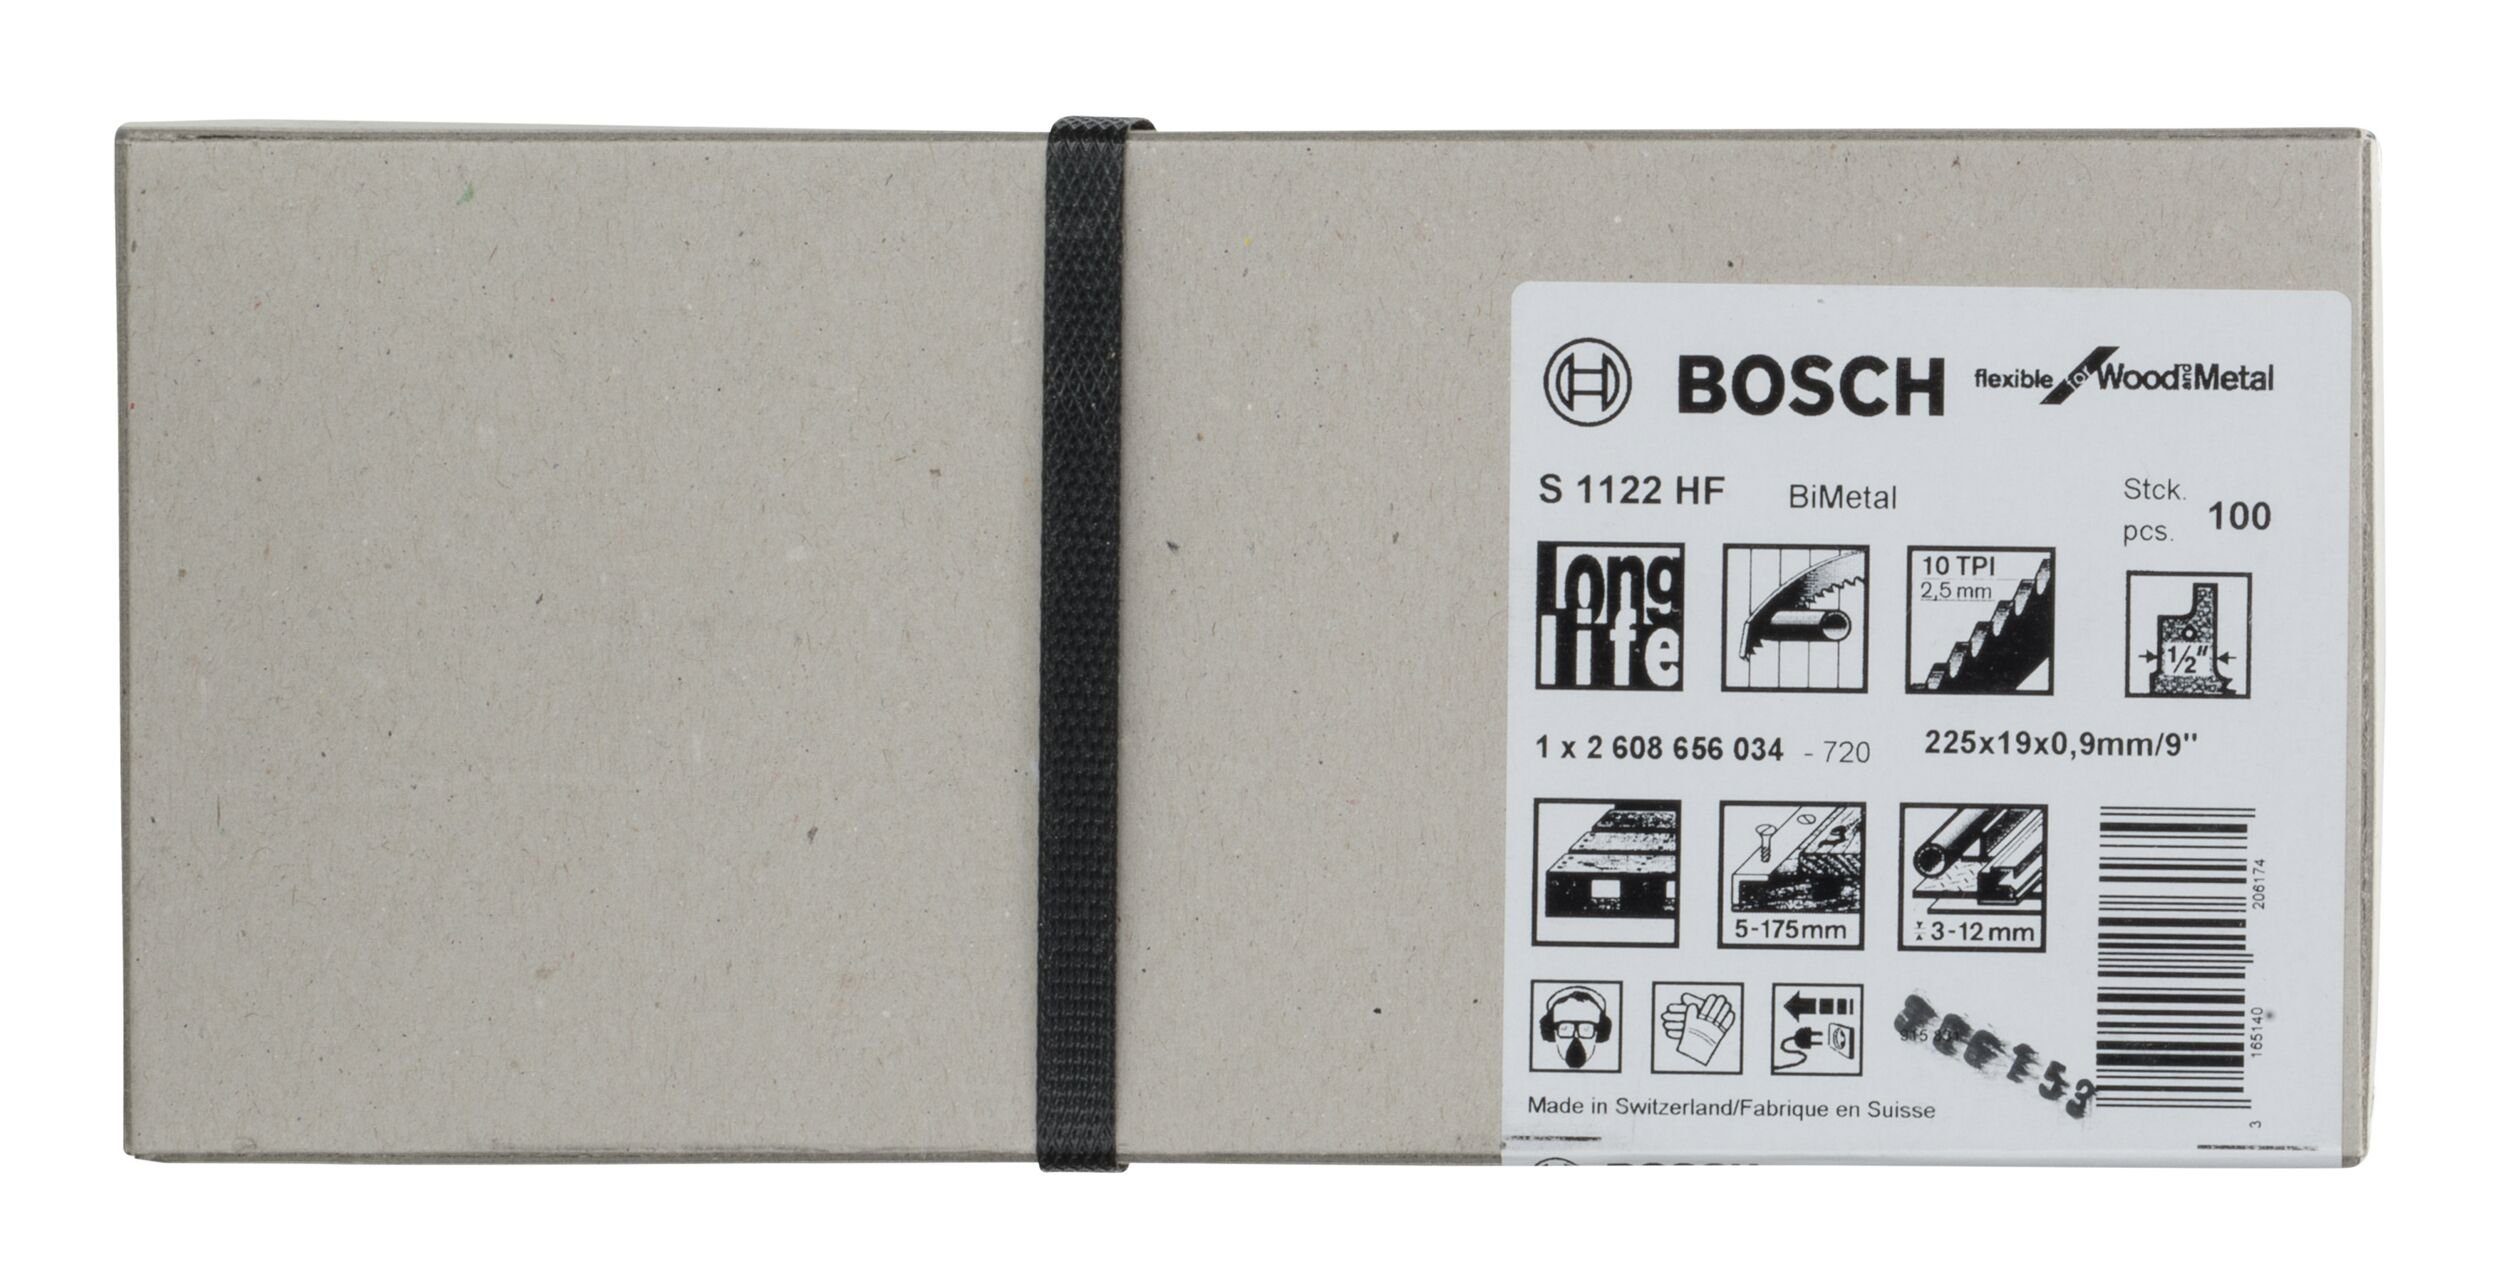 BOSCH Säbelsägeblatt (100 Stück), S and - 100er-Pack Wood Metal HF for Flexible 1122